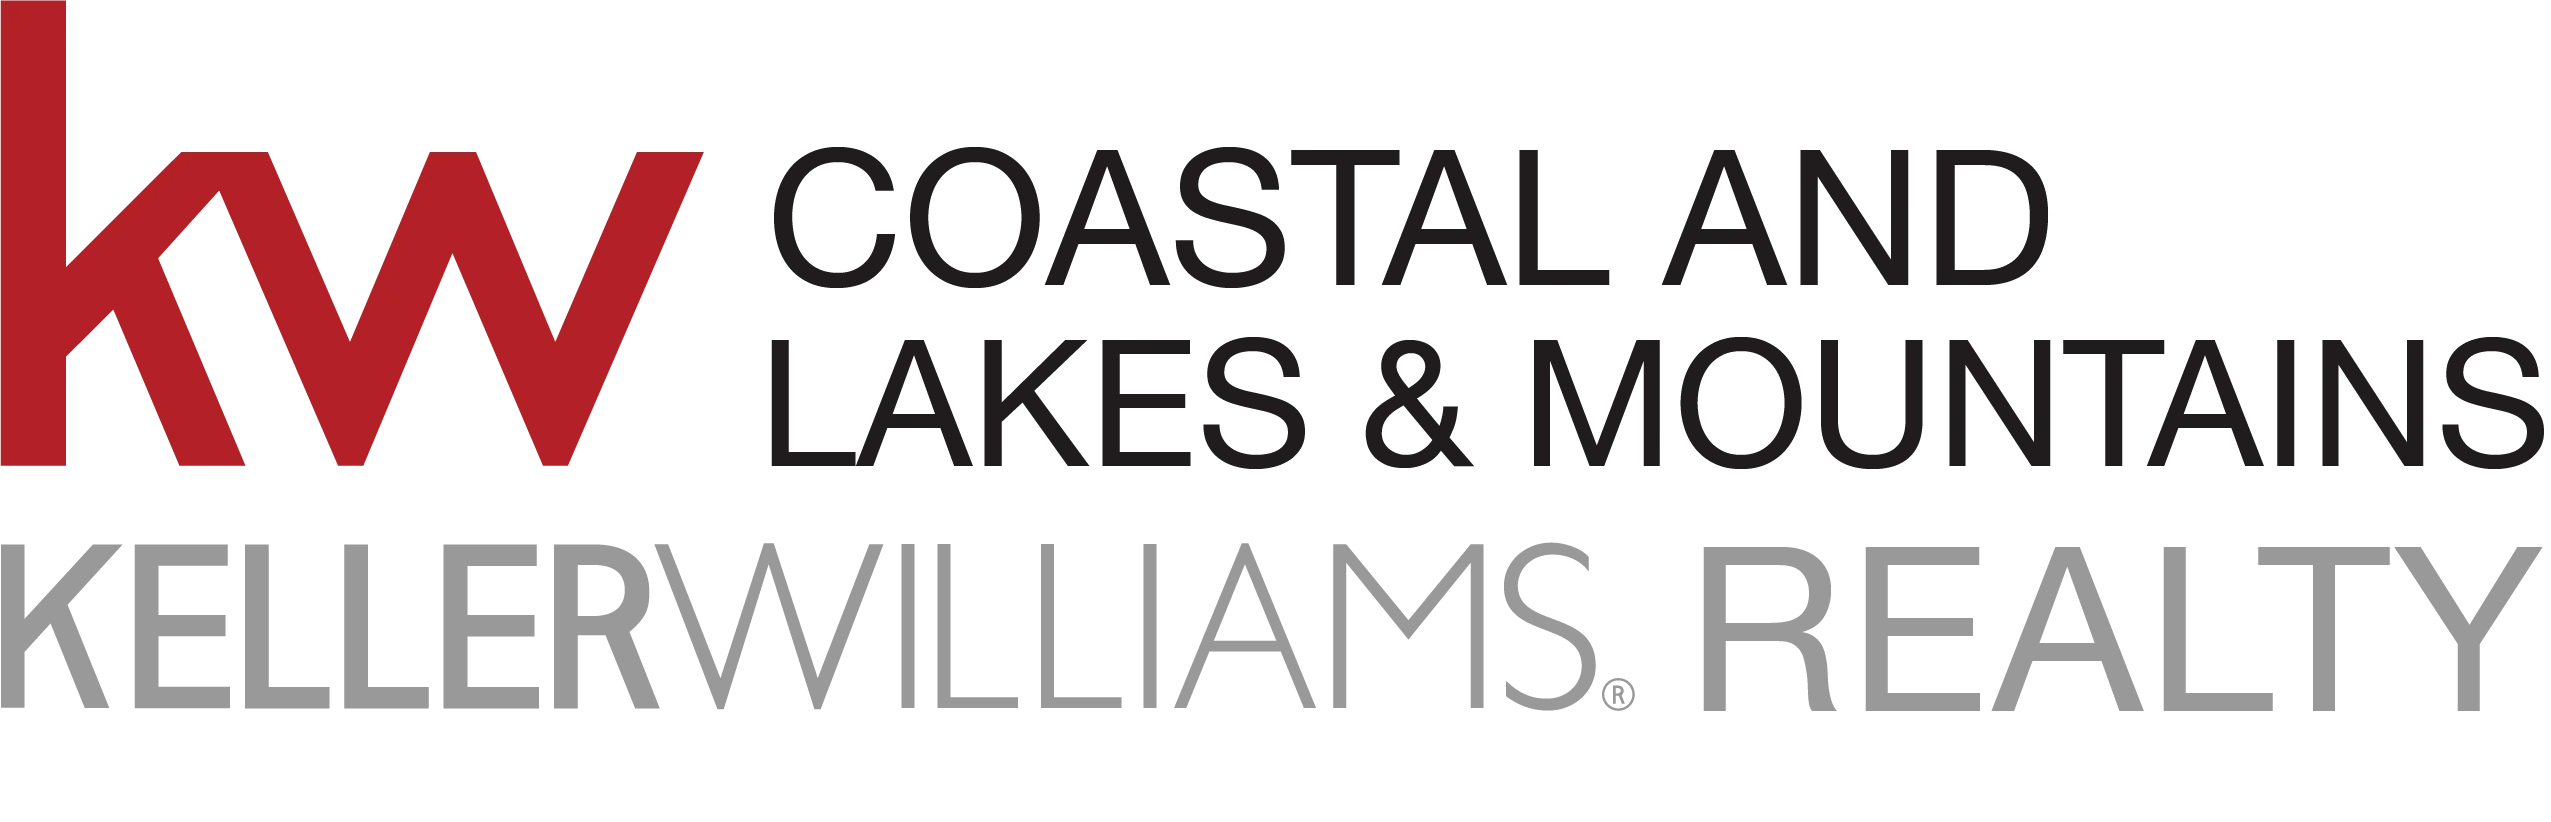 Keller Williams Lakes & Mountains Realty logo